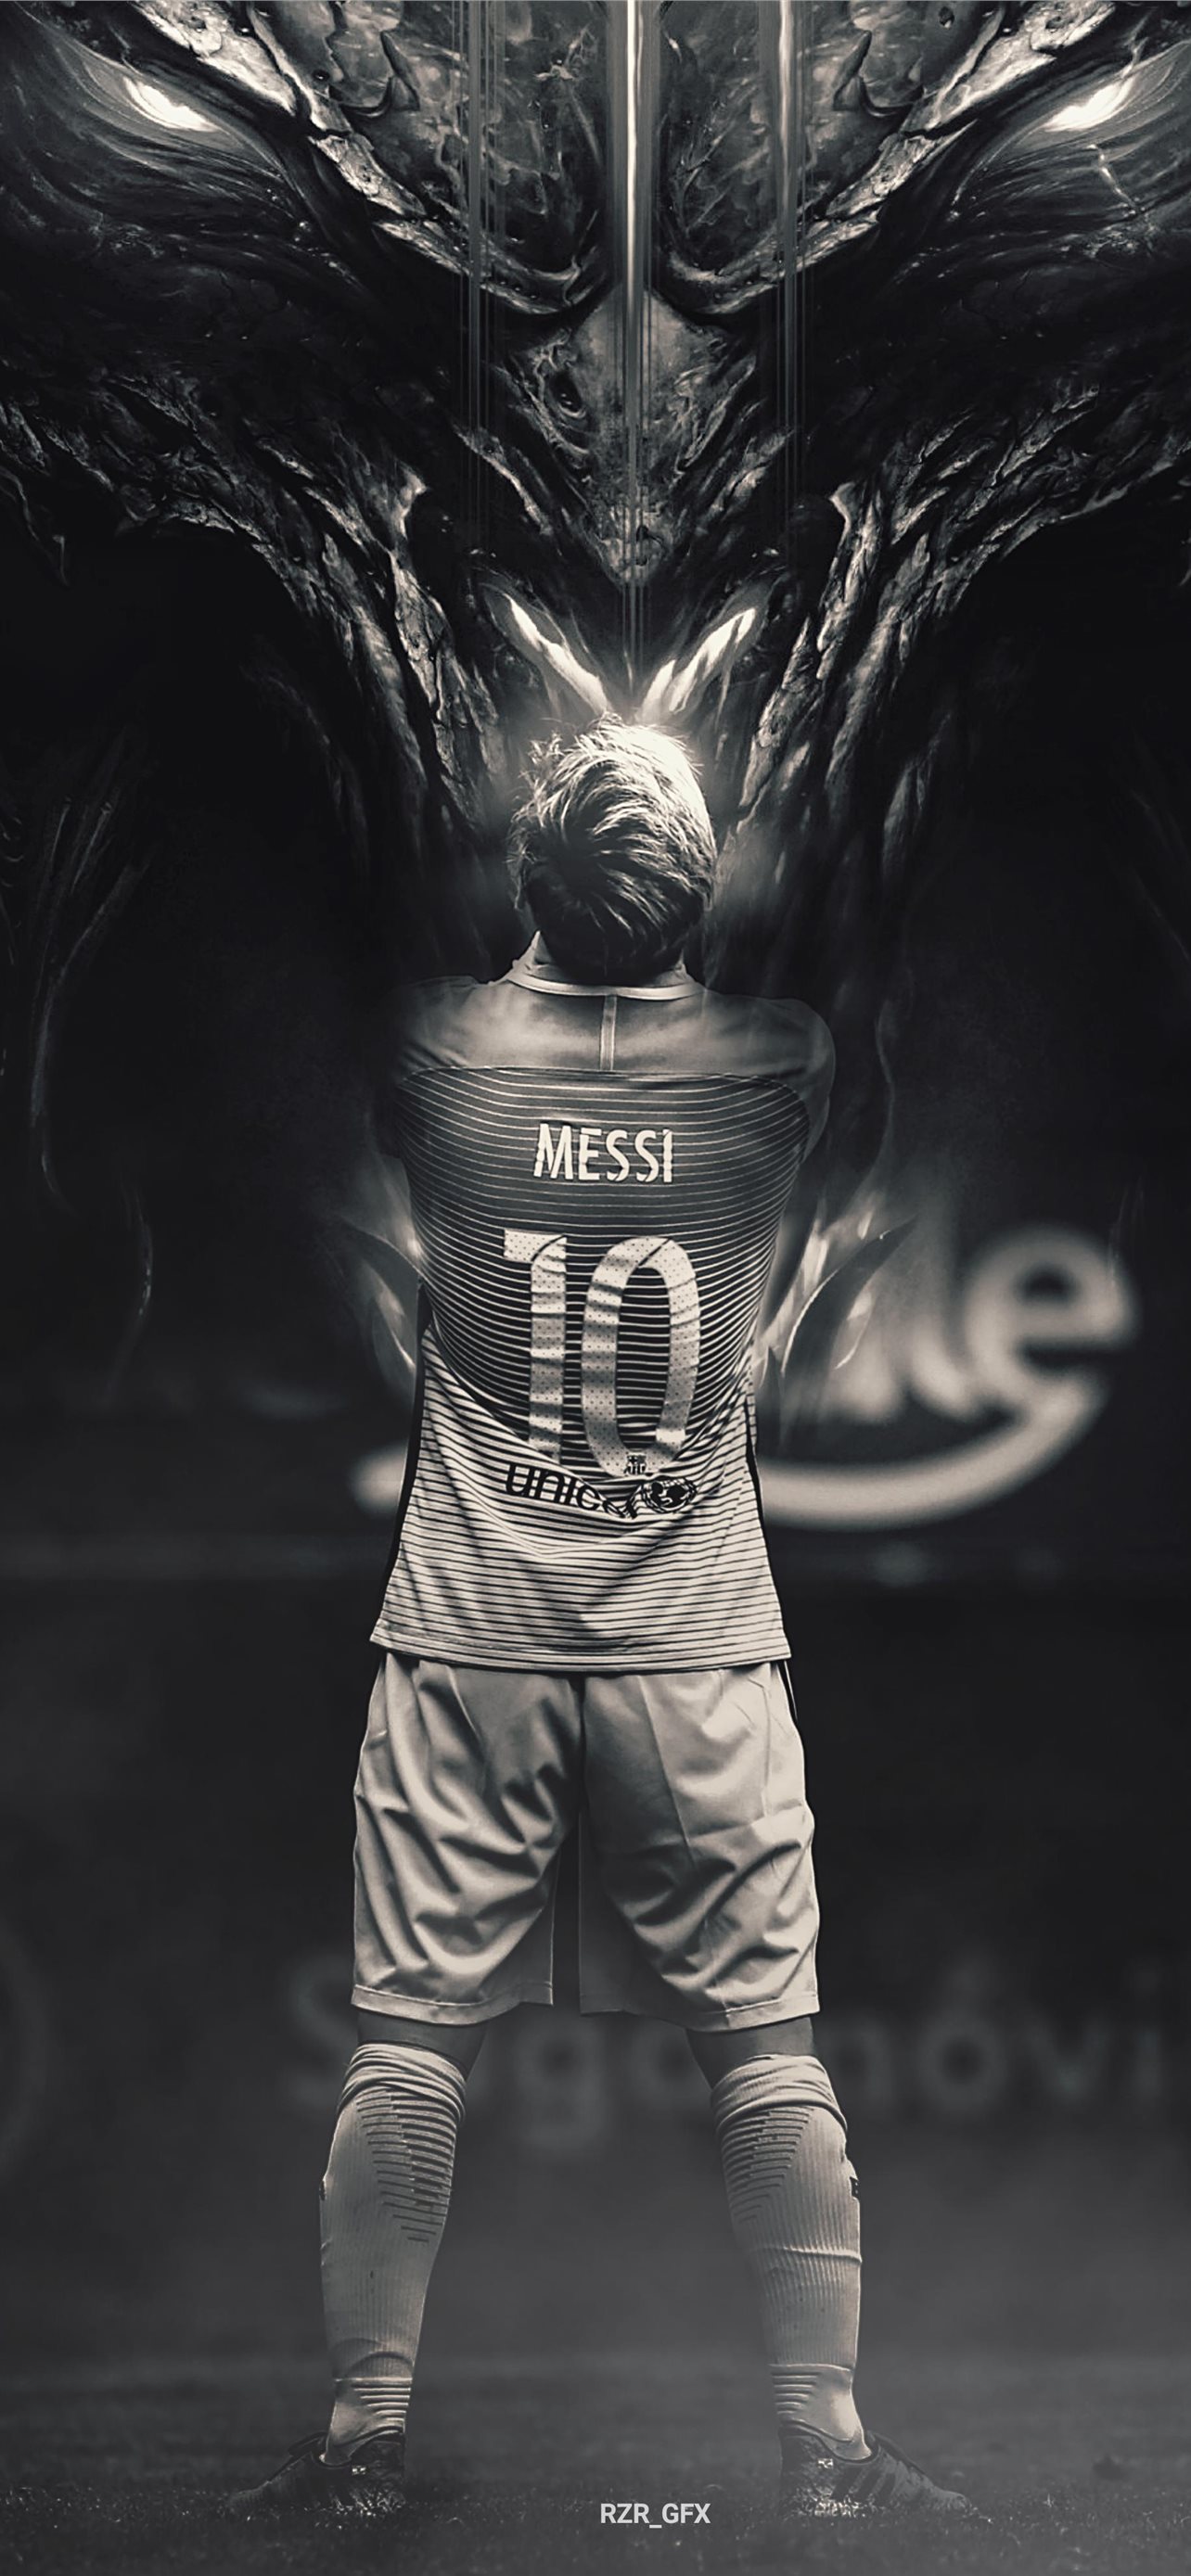 Hình nền HD của Messi làm nổi bật màn hình điện thoại của bạn với hình ảnh đẹp rực rỡ của siêu sao bóng đá nổi tiếng này. Tận hưởng tinh thần thi đấu của Messi trên màn hình điện thoại của bạn với những bức tranh nền đẹp đến từ những tác giả tài ba.